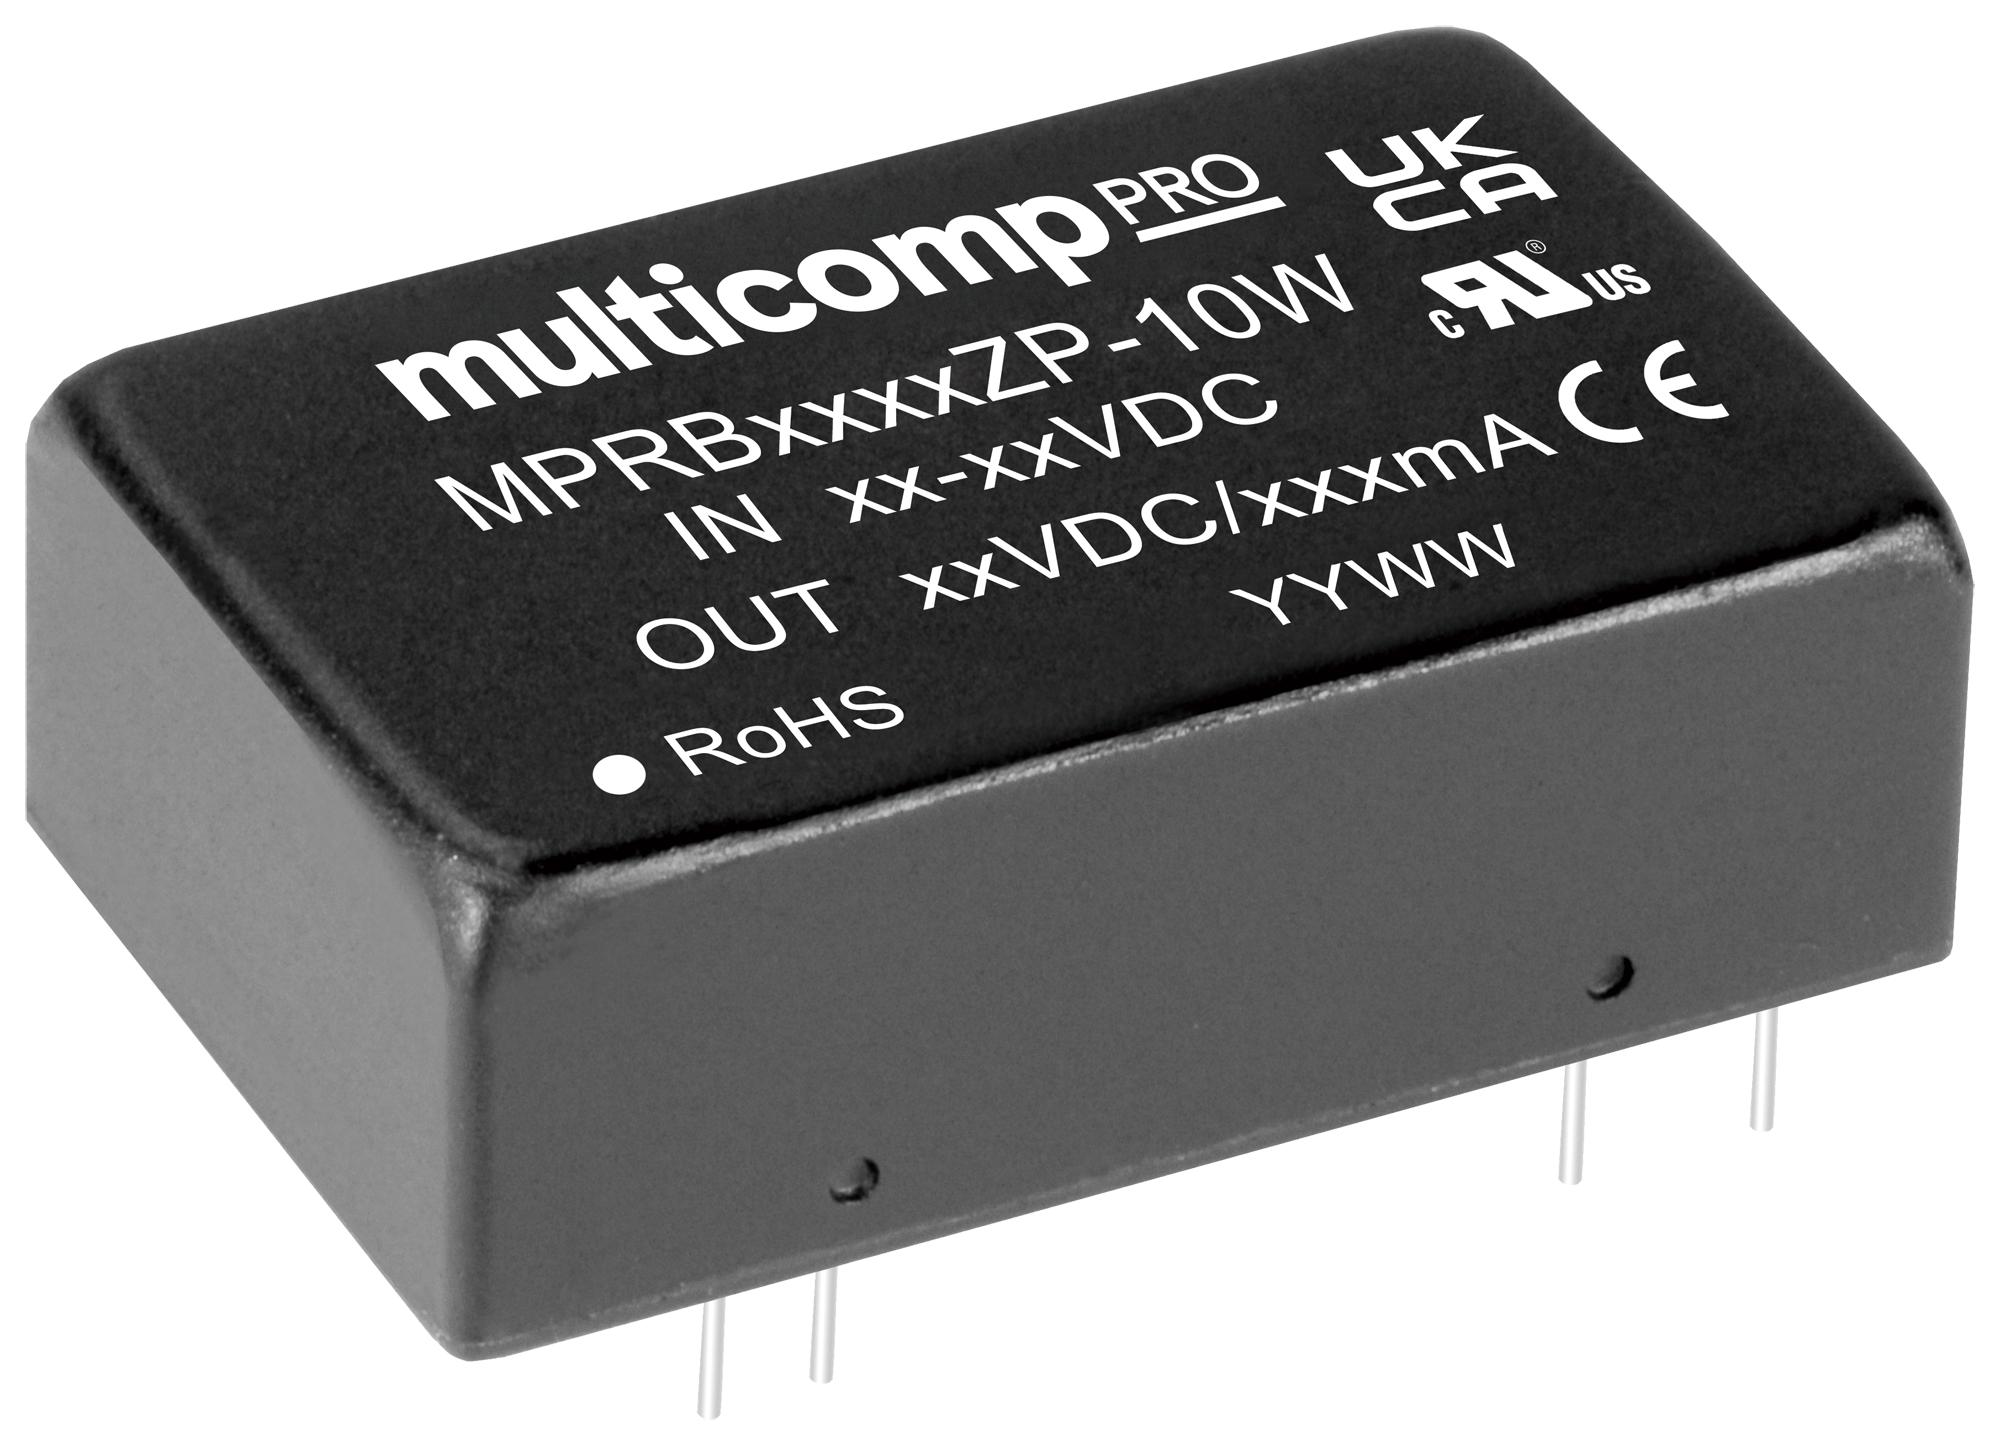 MPRB4803ZP-10W DC-DC CONVERTER, 3.3V, 2.4A MULTICOMP PRO